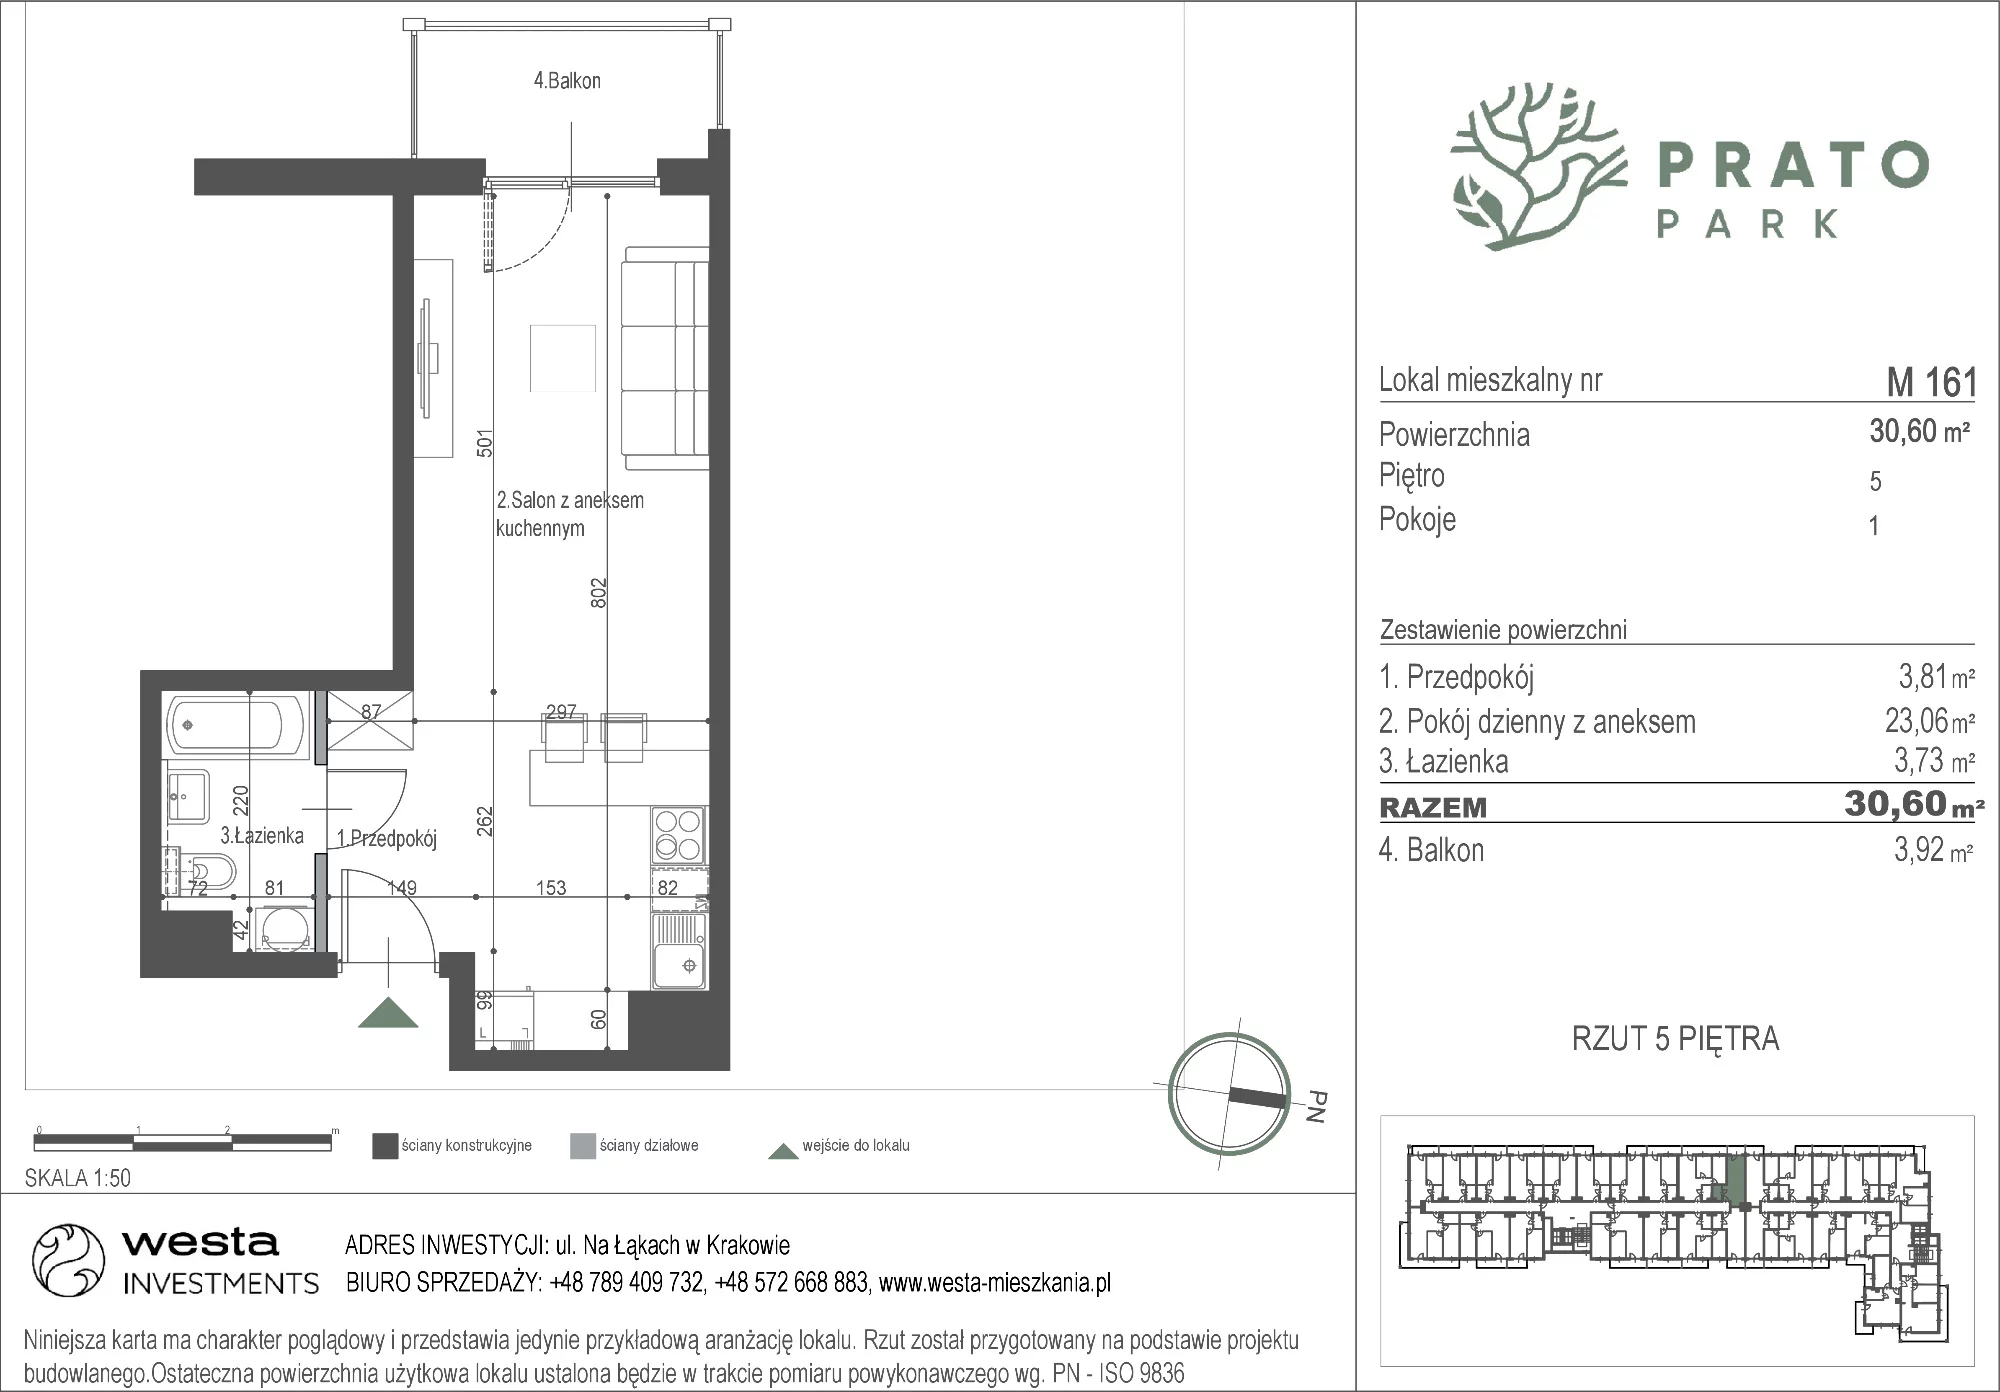 Mieszkanie 30,60 m², piętro 5, oferta nr M161, Prato Park, Kraków, Czyżyny, ul. Na Łąkach